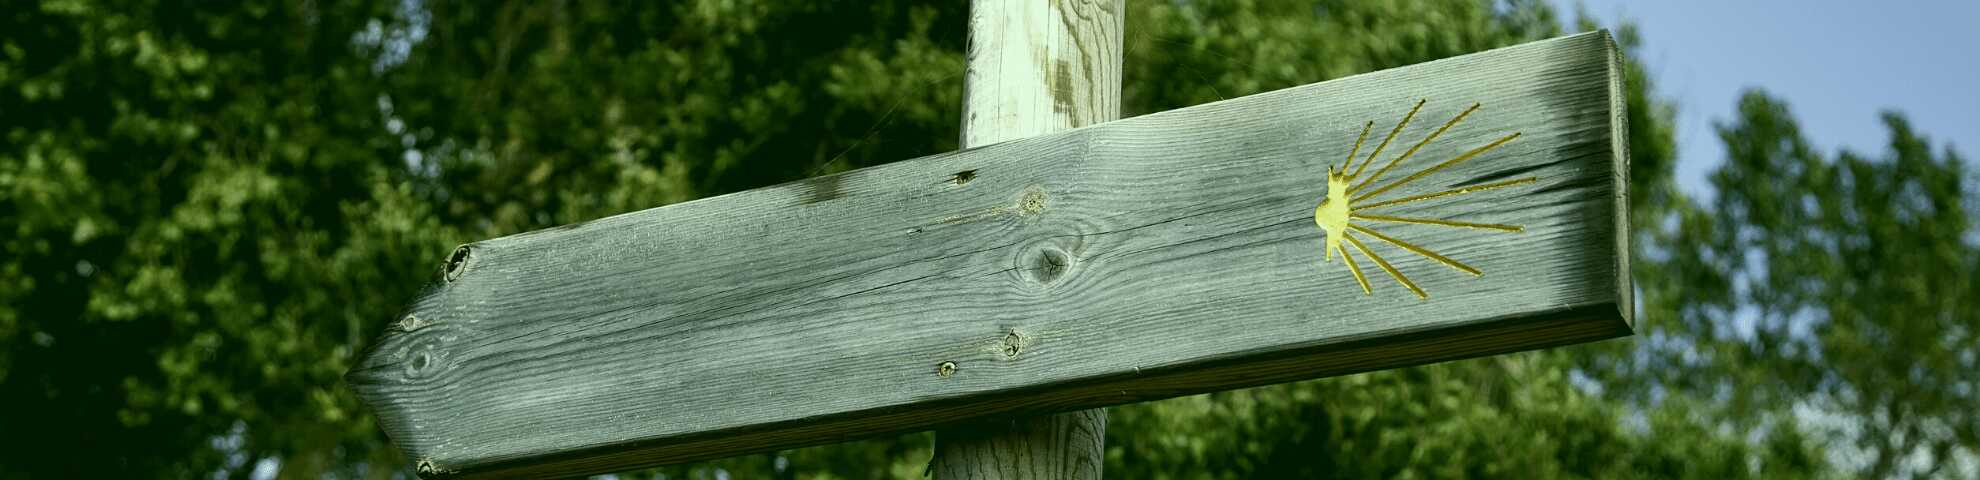 Señal de madera con símbolo del Camino